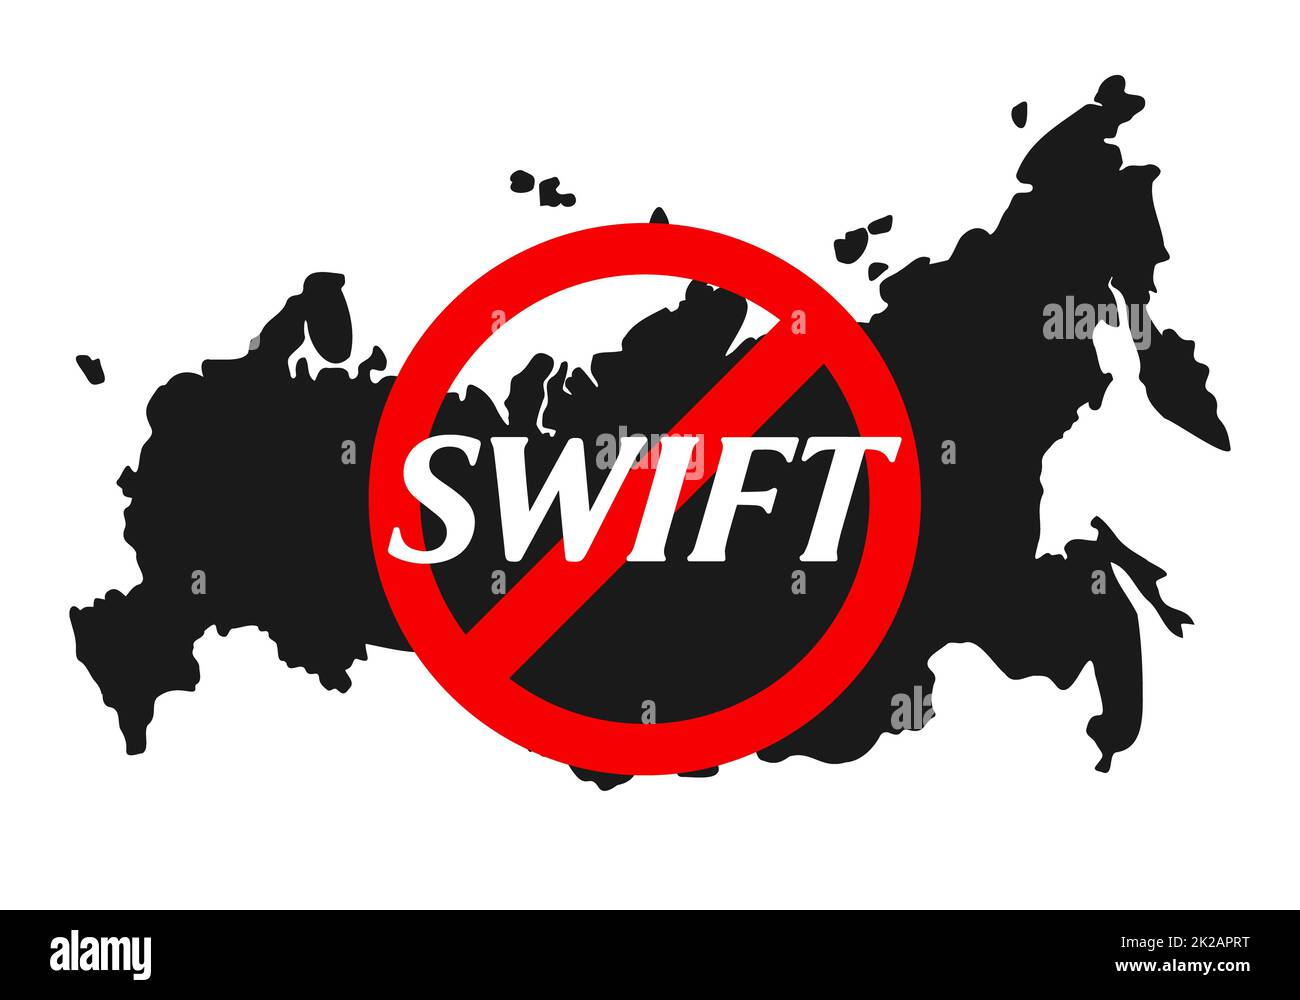 Verbotener Swift-Text für das Finanzsystem unter rotem Verbotsschild mit russischer Karte im Hintergrund. Sanktionen gegen Russland und Abkehr von der Schnelligkeit durch den Krieg gegen die friedliche Ukraine. Stockfoto